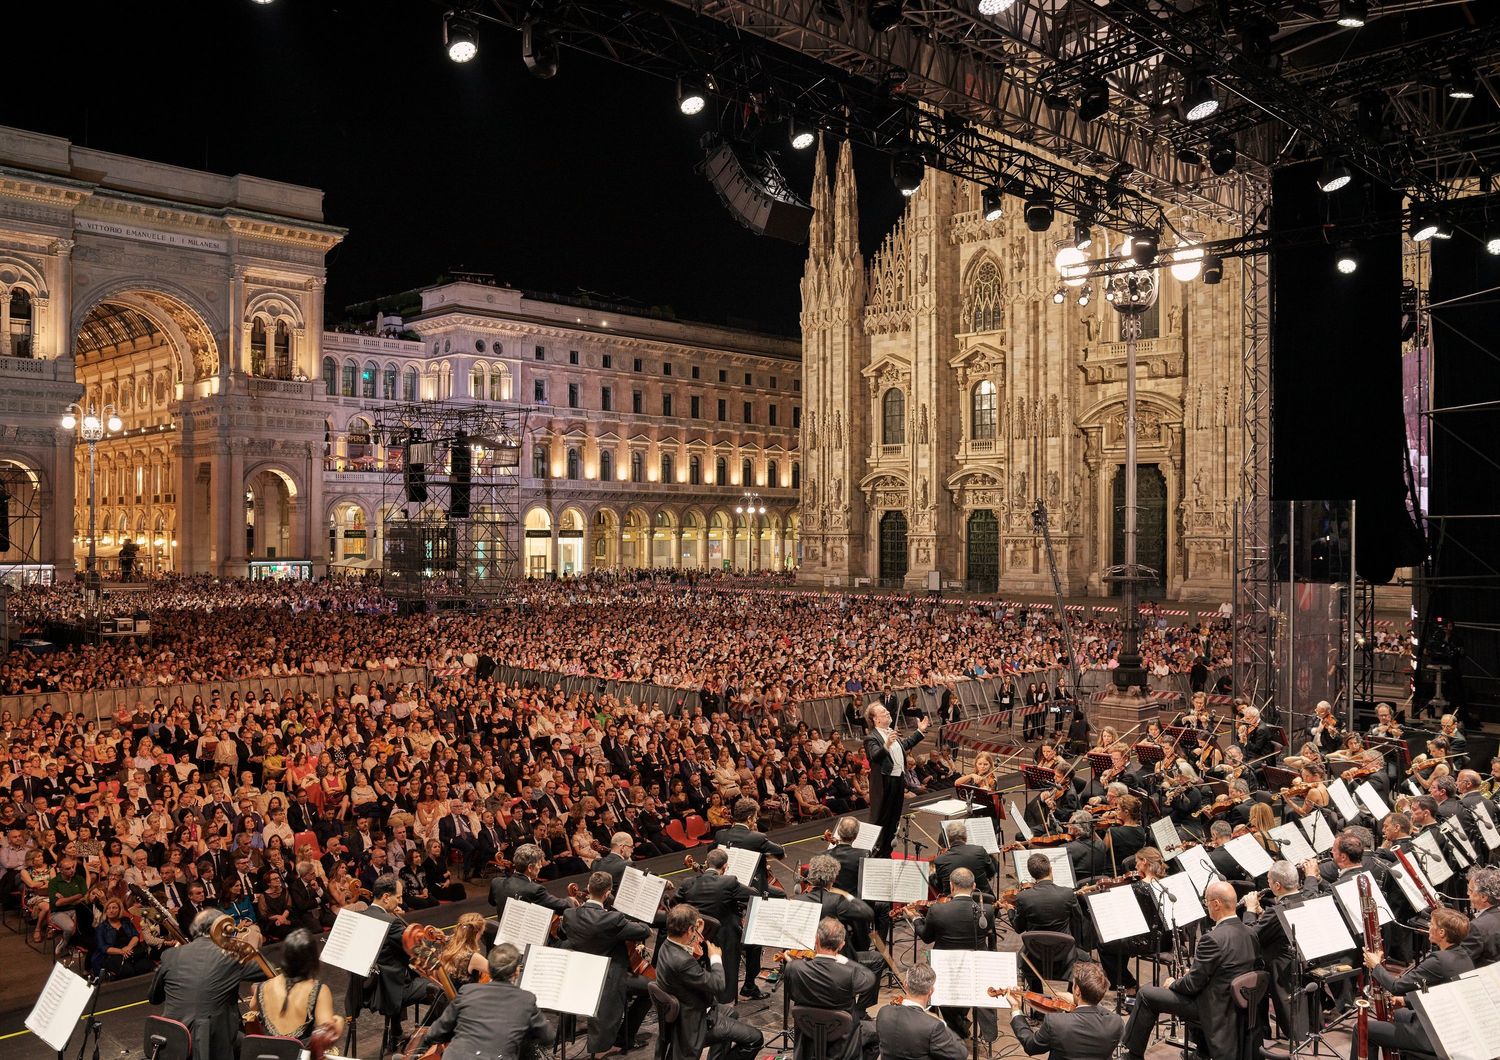 Concerto per Milano del 2018